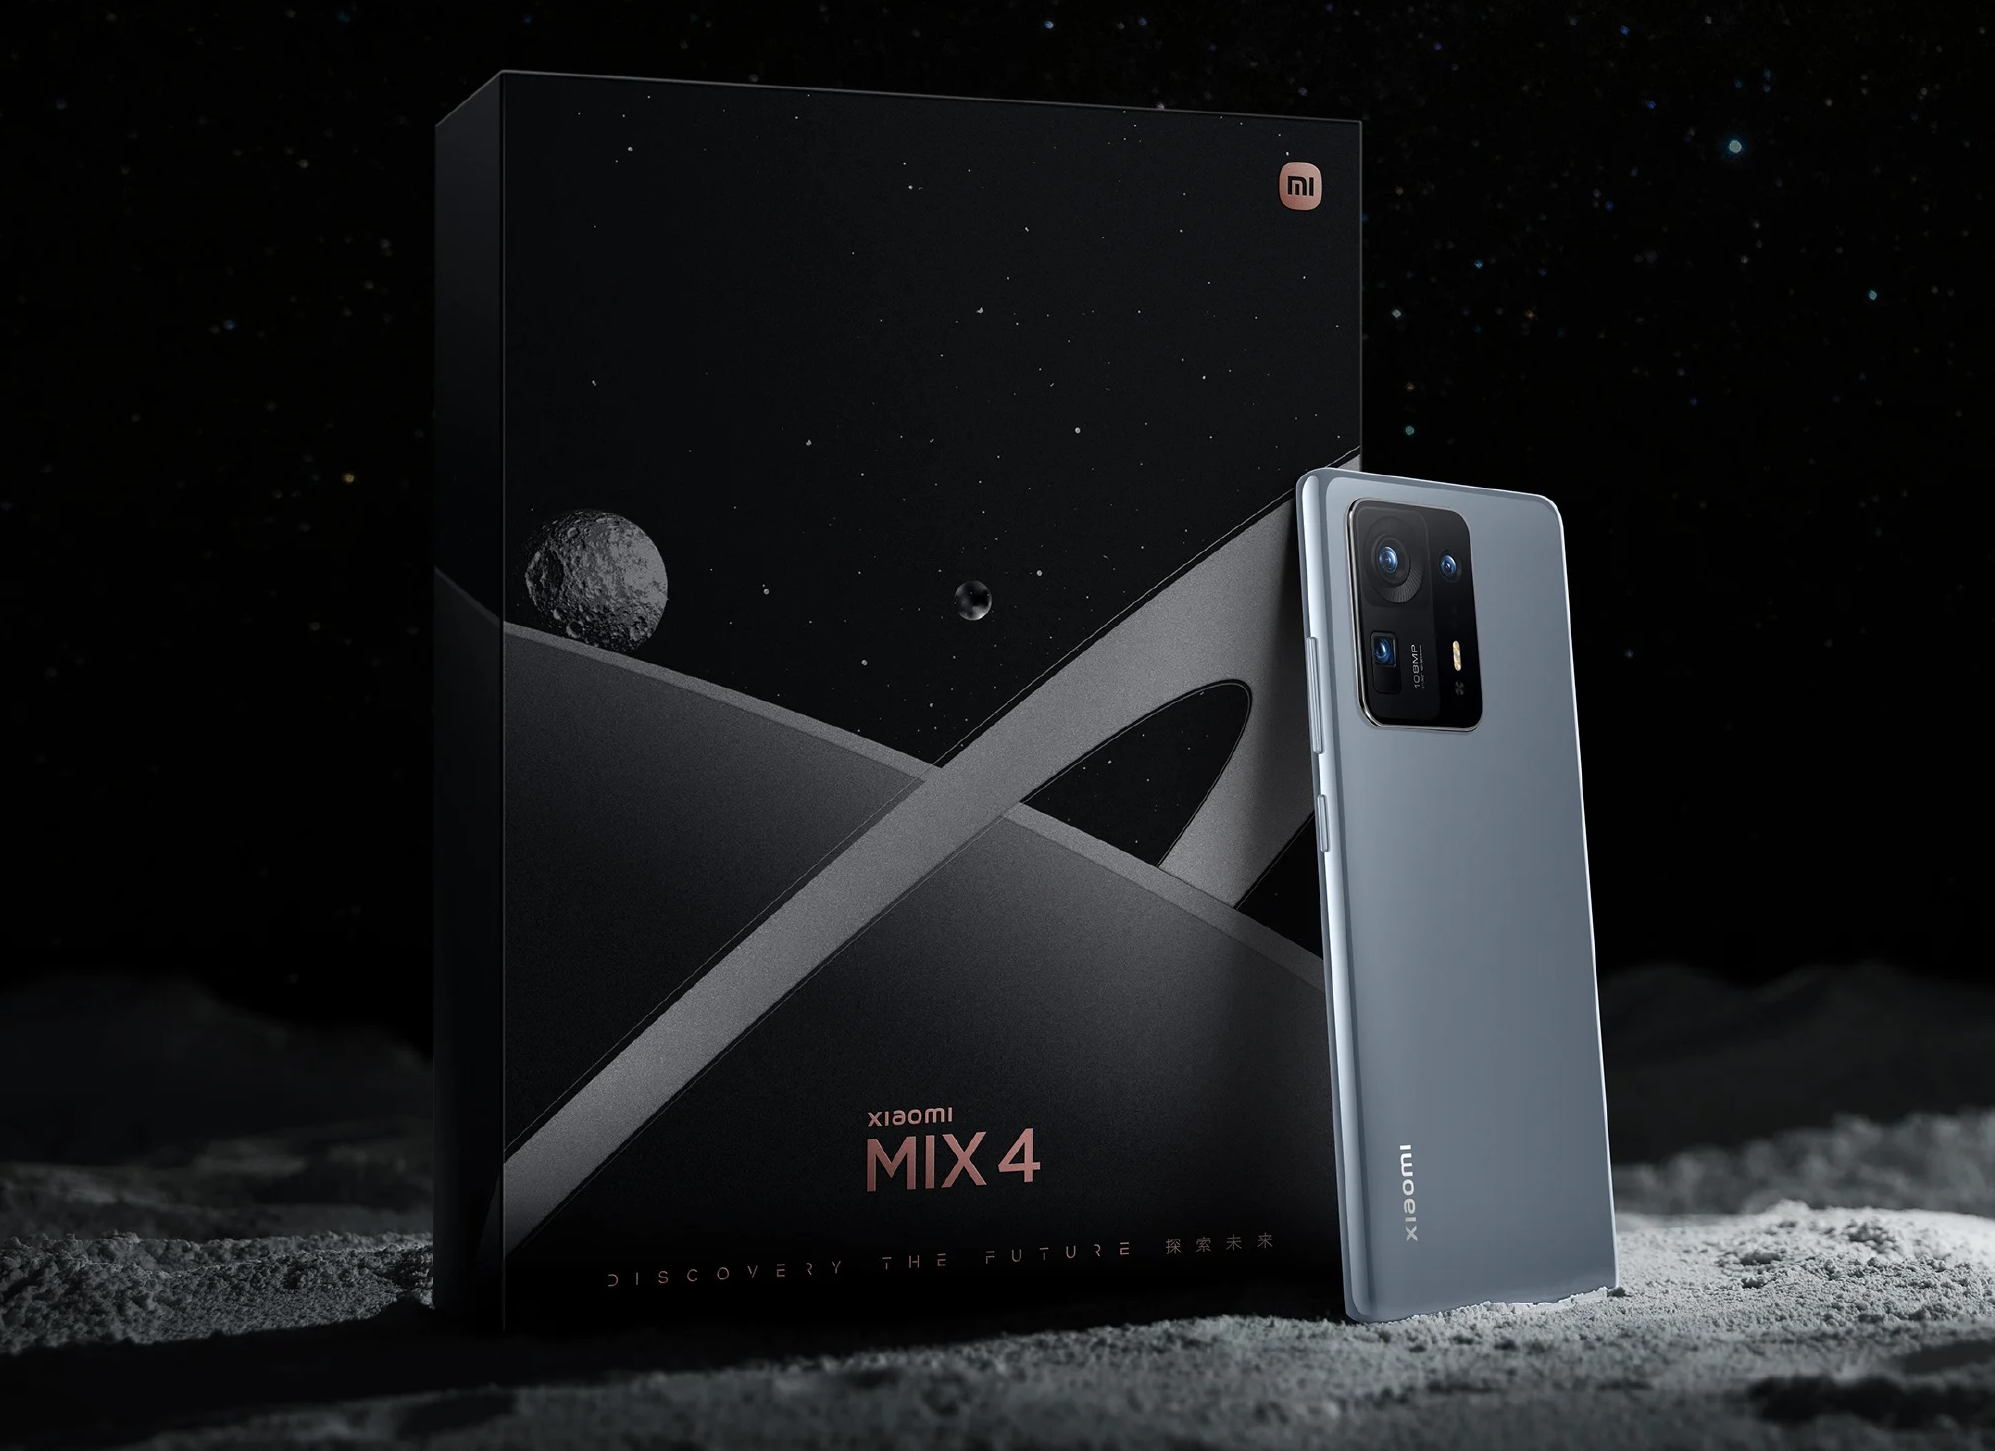 Le smartphone spatial Xiaomi Mix 4 Exploration dévoilé